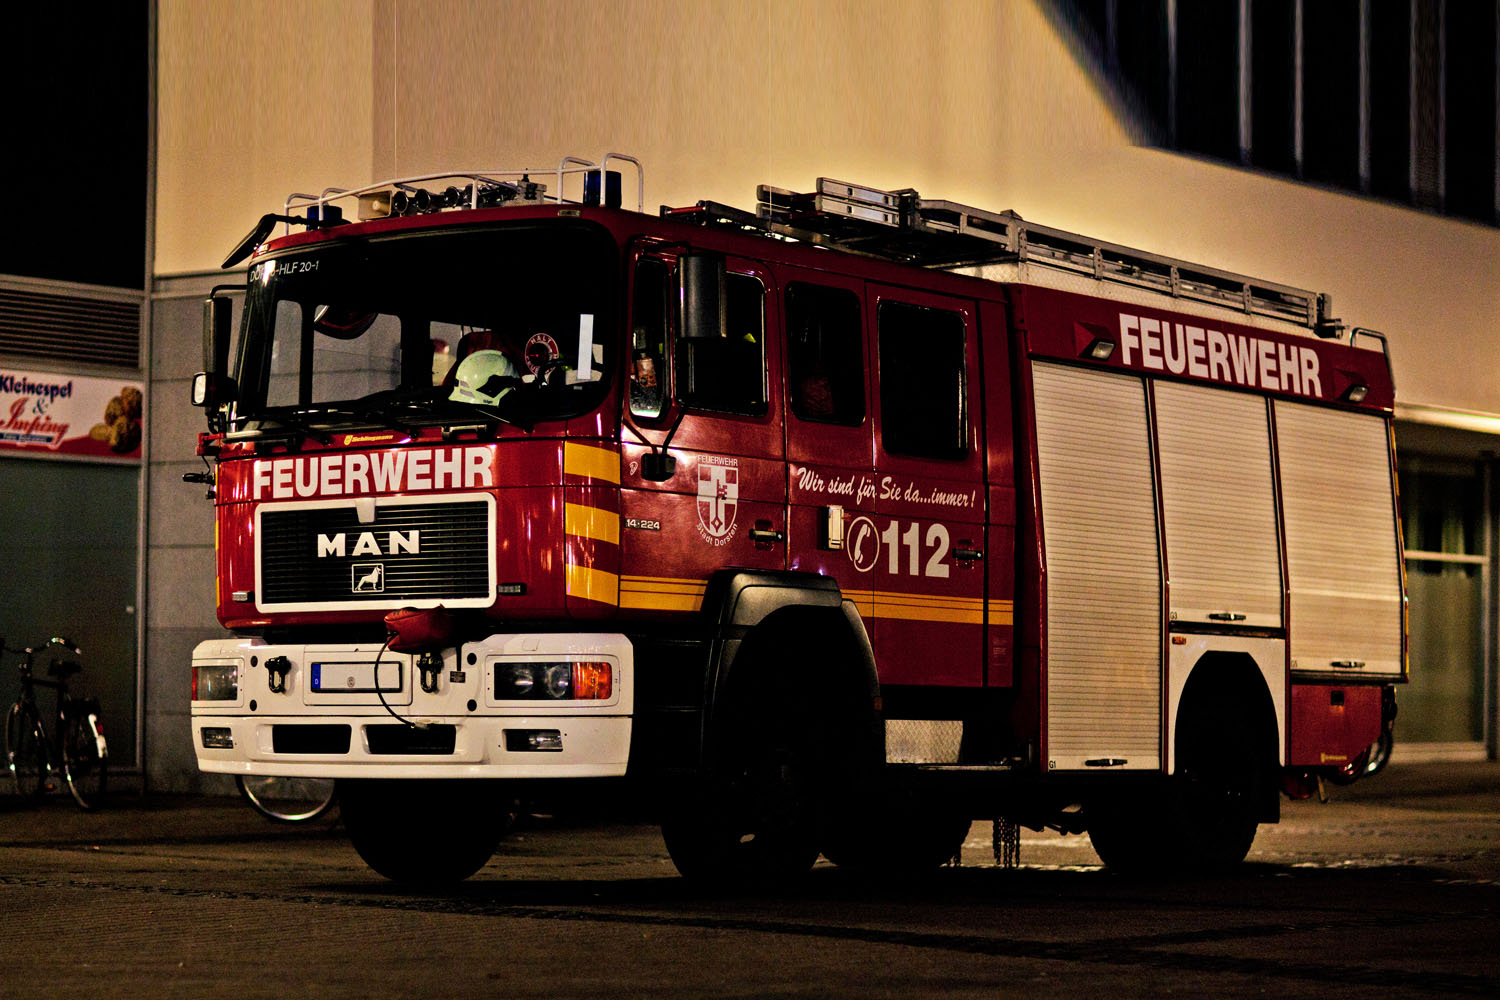 (c) Feuerwehr-dorsten.de